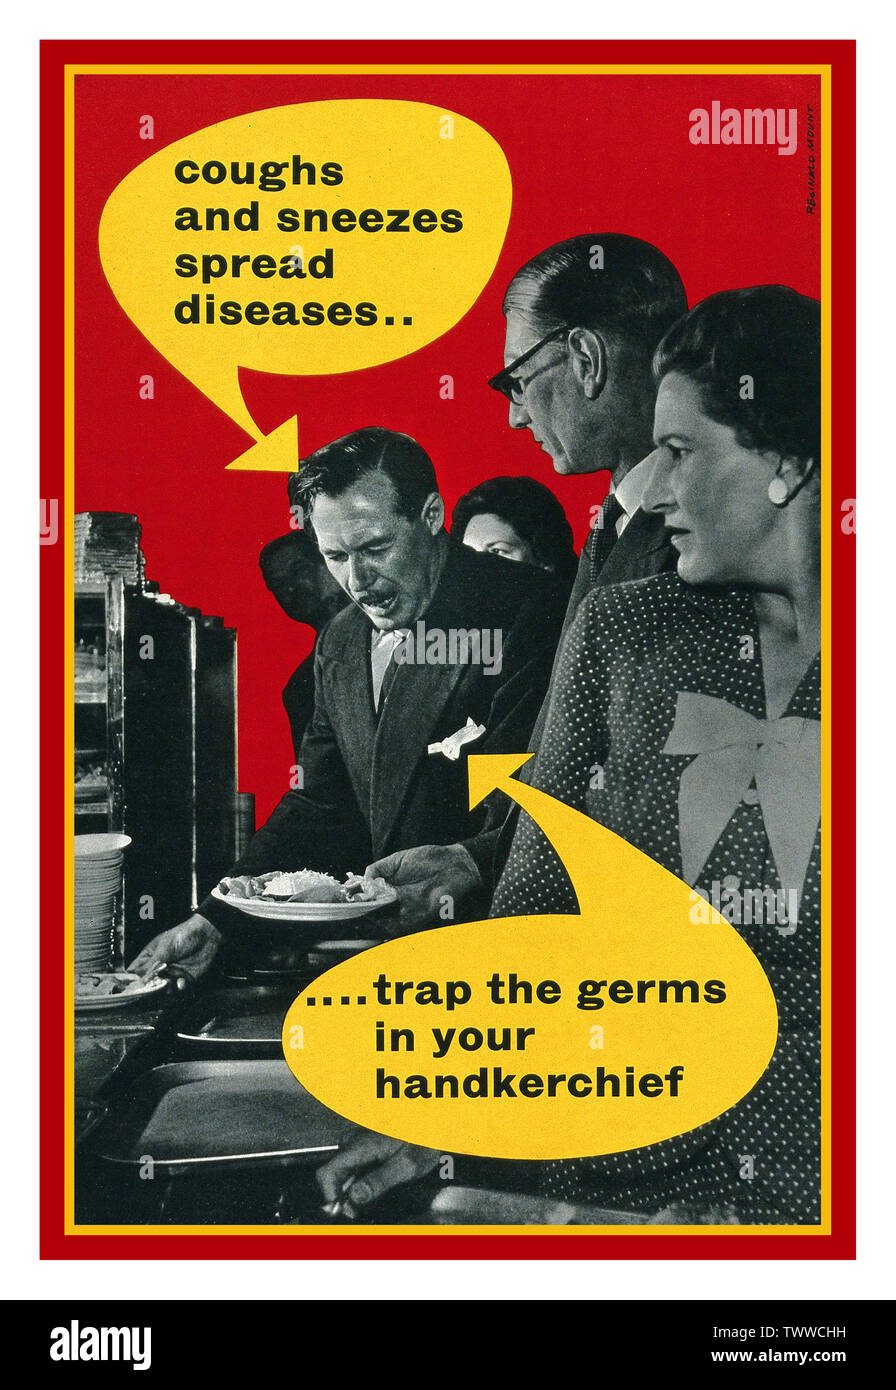 1940 Vintage UK britannique de la santé de la propagande de l'affiche. Le ministère de la Santé dit : "tousse et éternue propagation de maladies". 'Interruption les microbes dans votre mouchoir'. Un homme sur le point de tousser ou éternuer pas à l'aide d'un mouchoir de couleur Banque D'Images